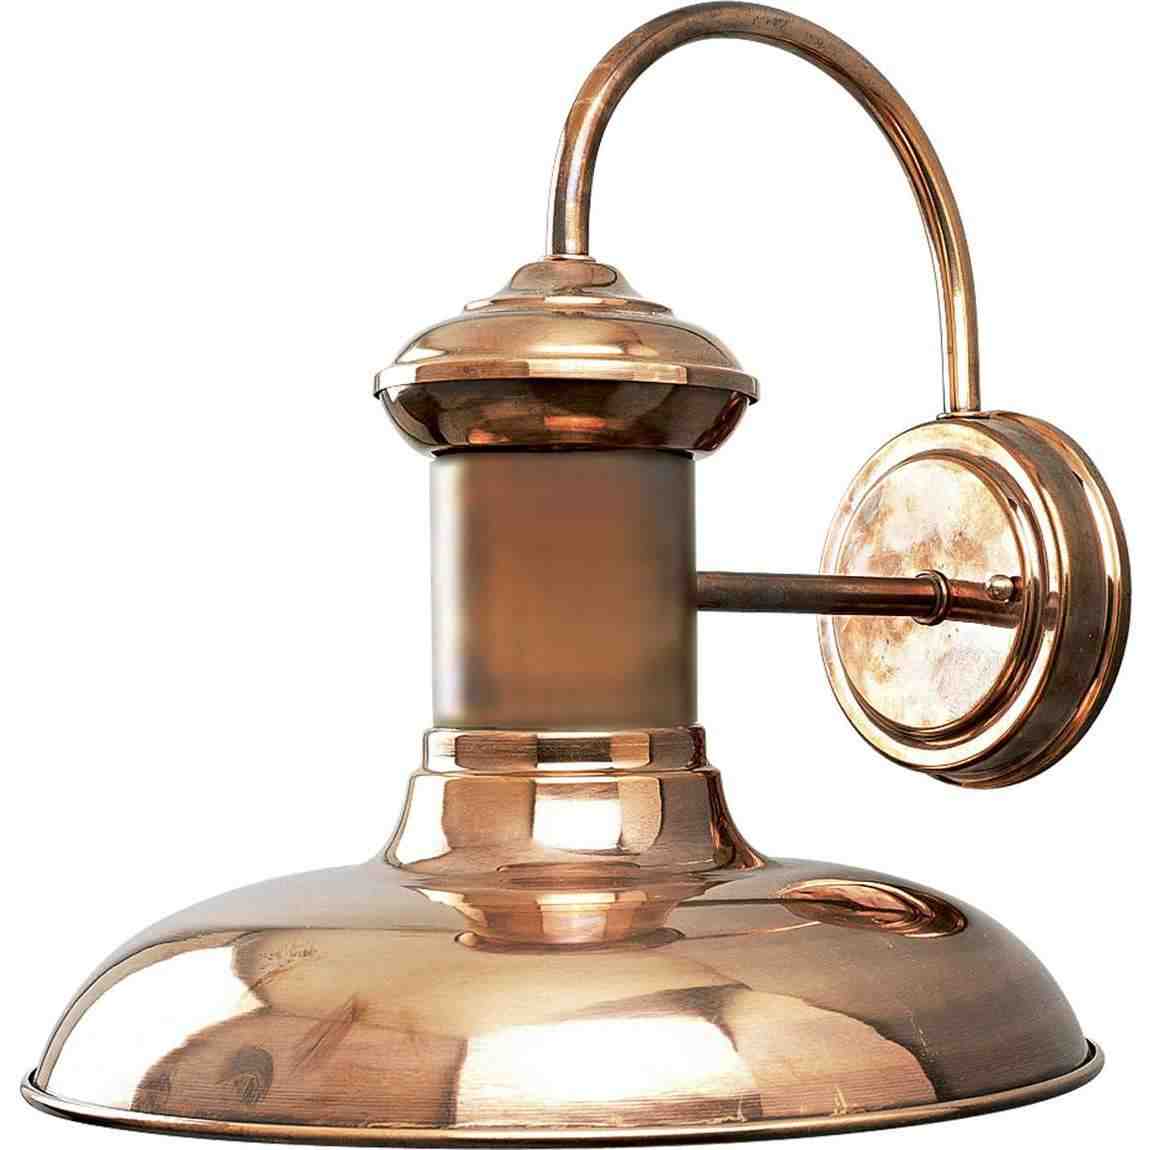 Copper Outdoor Lighting Fixtures - Decor Ideas